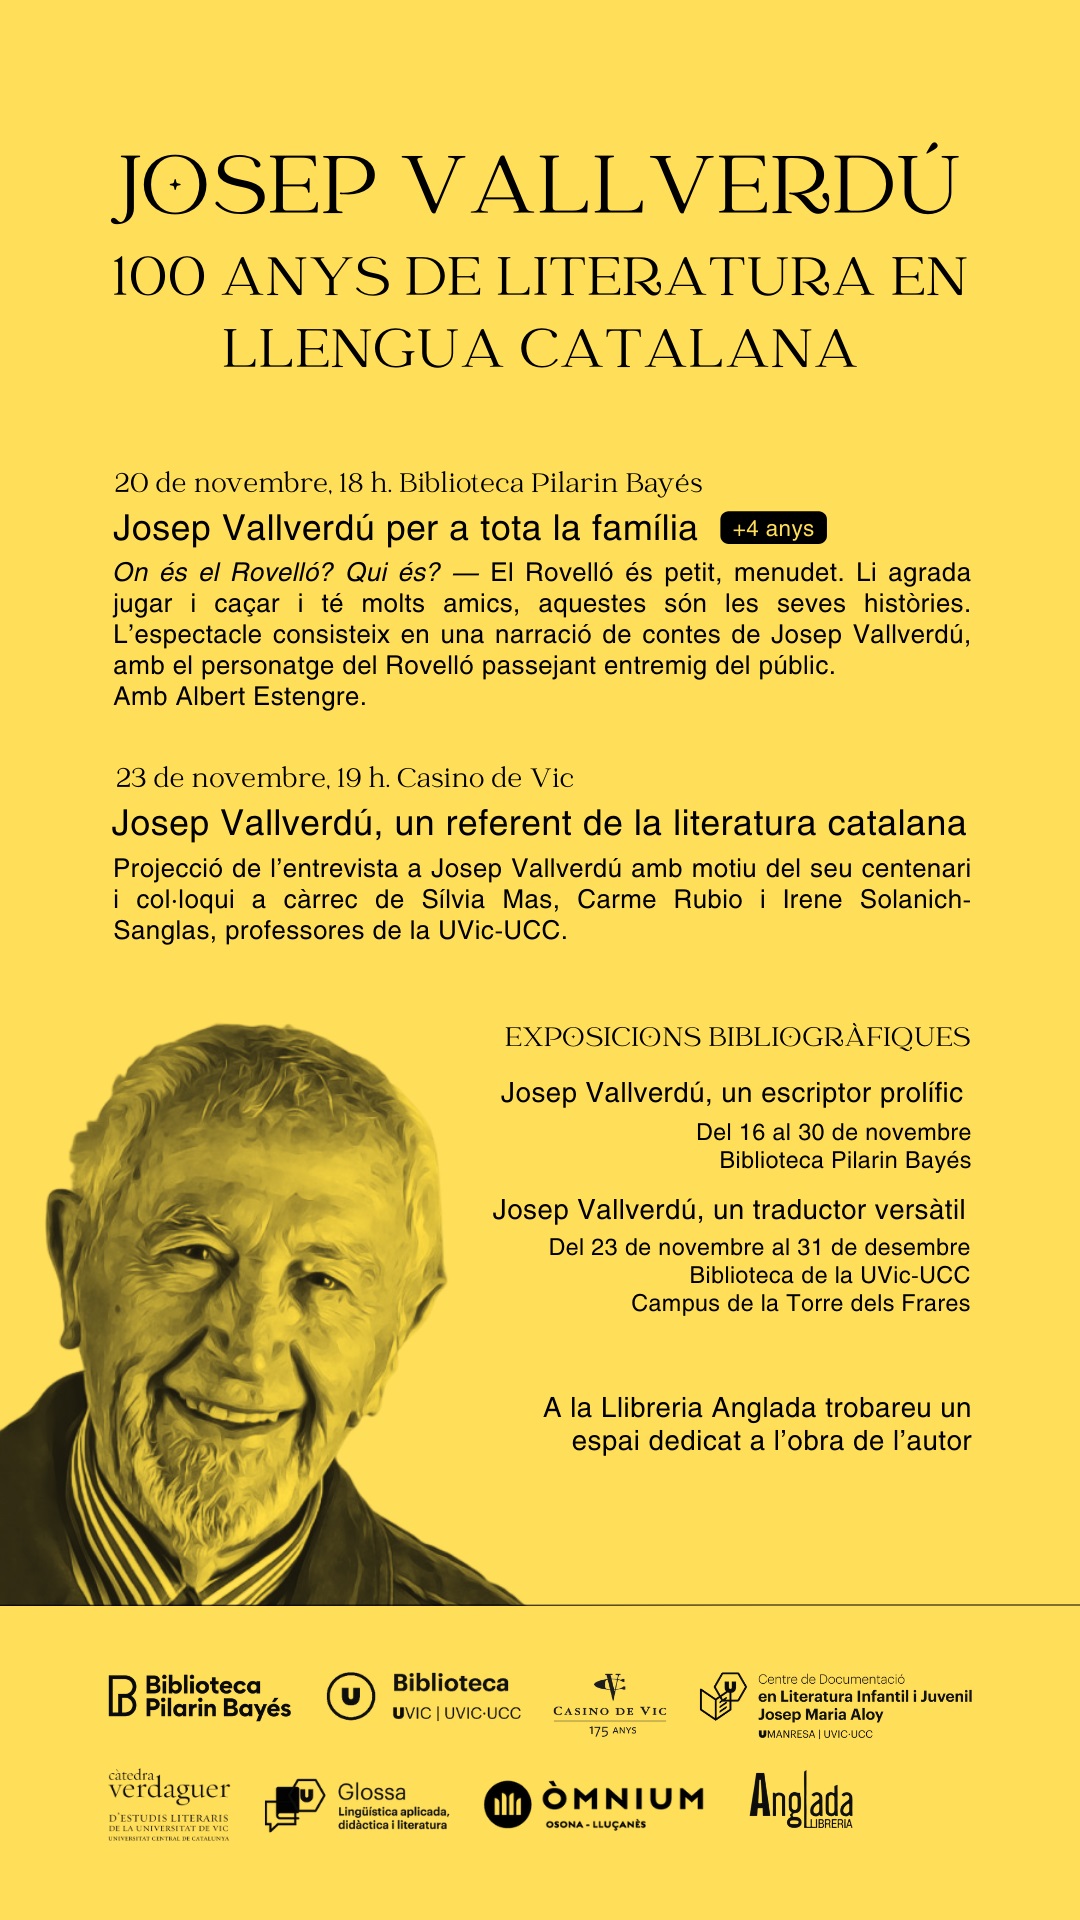 Josep Vallverdú: 100 anys de literatura en llengua catalana